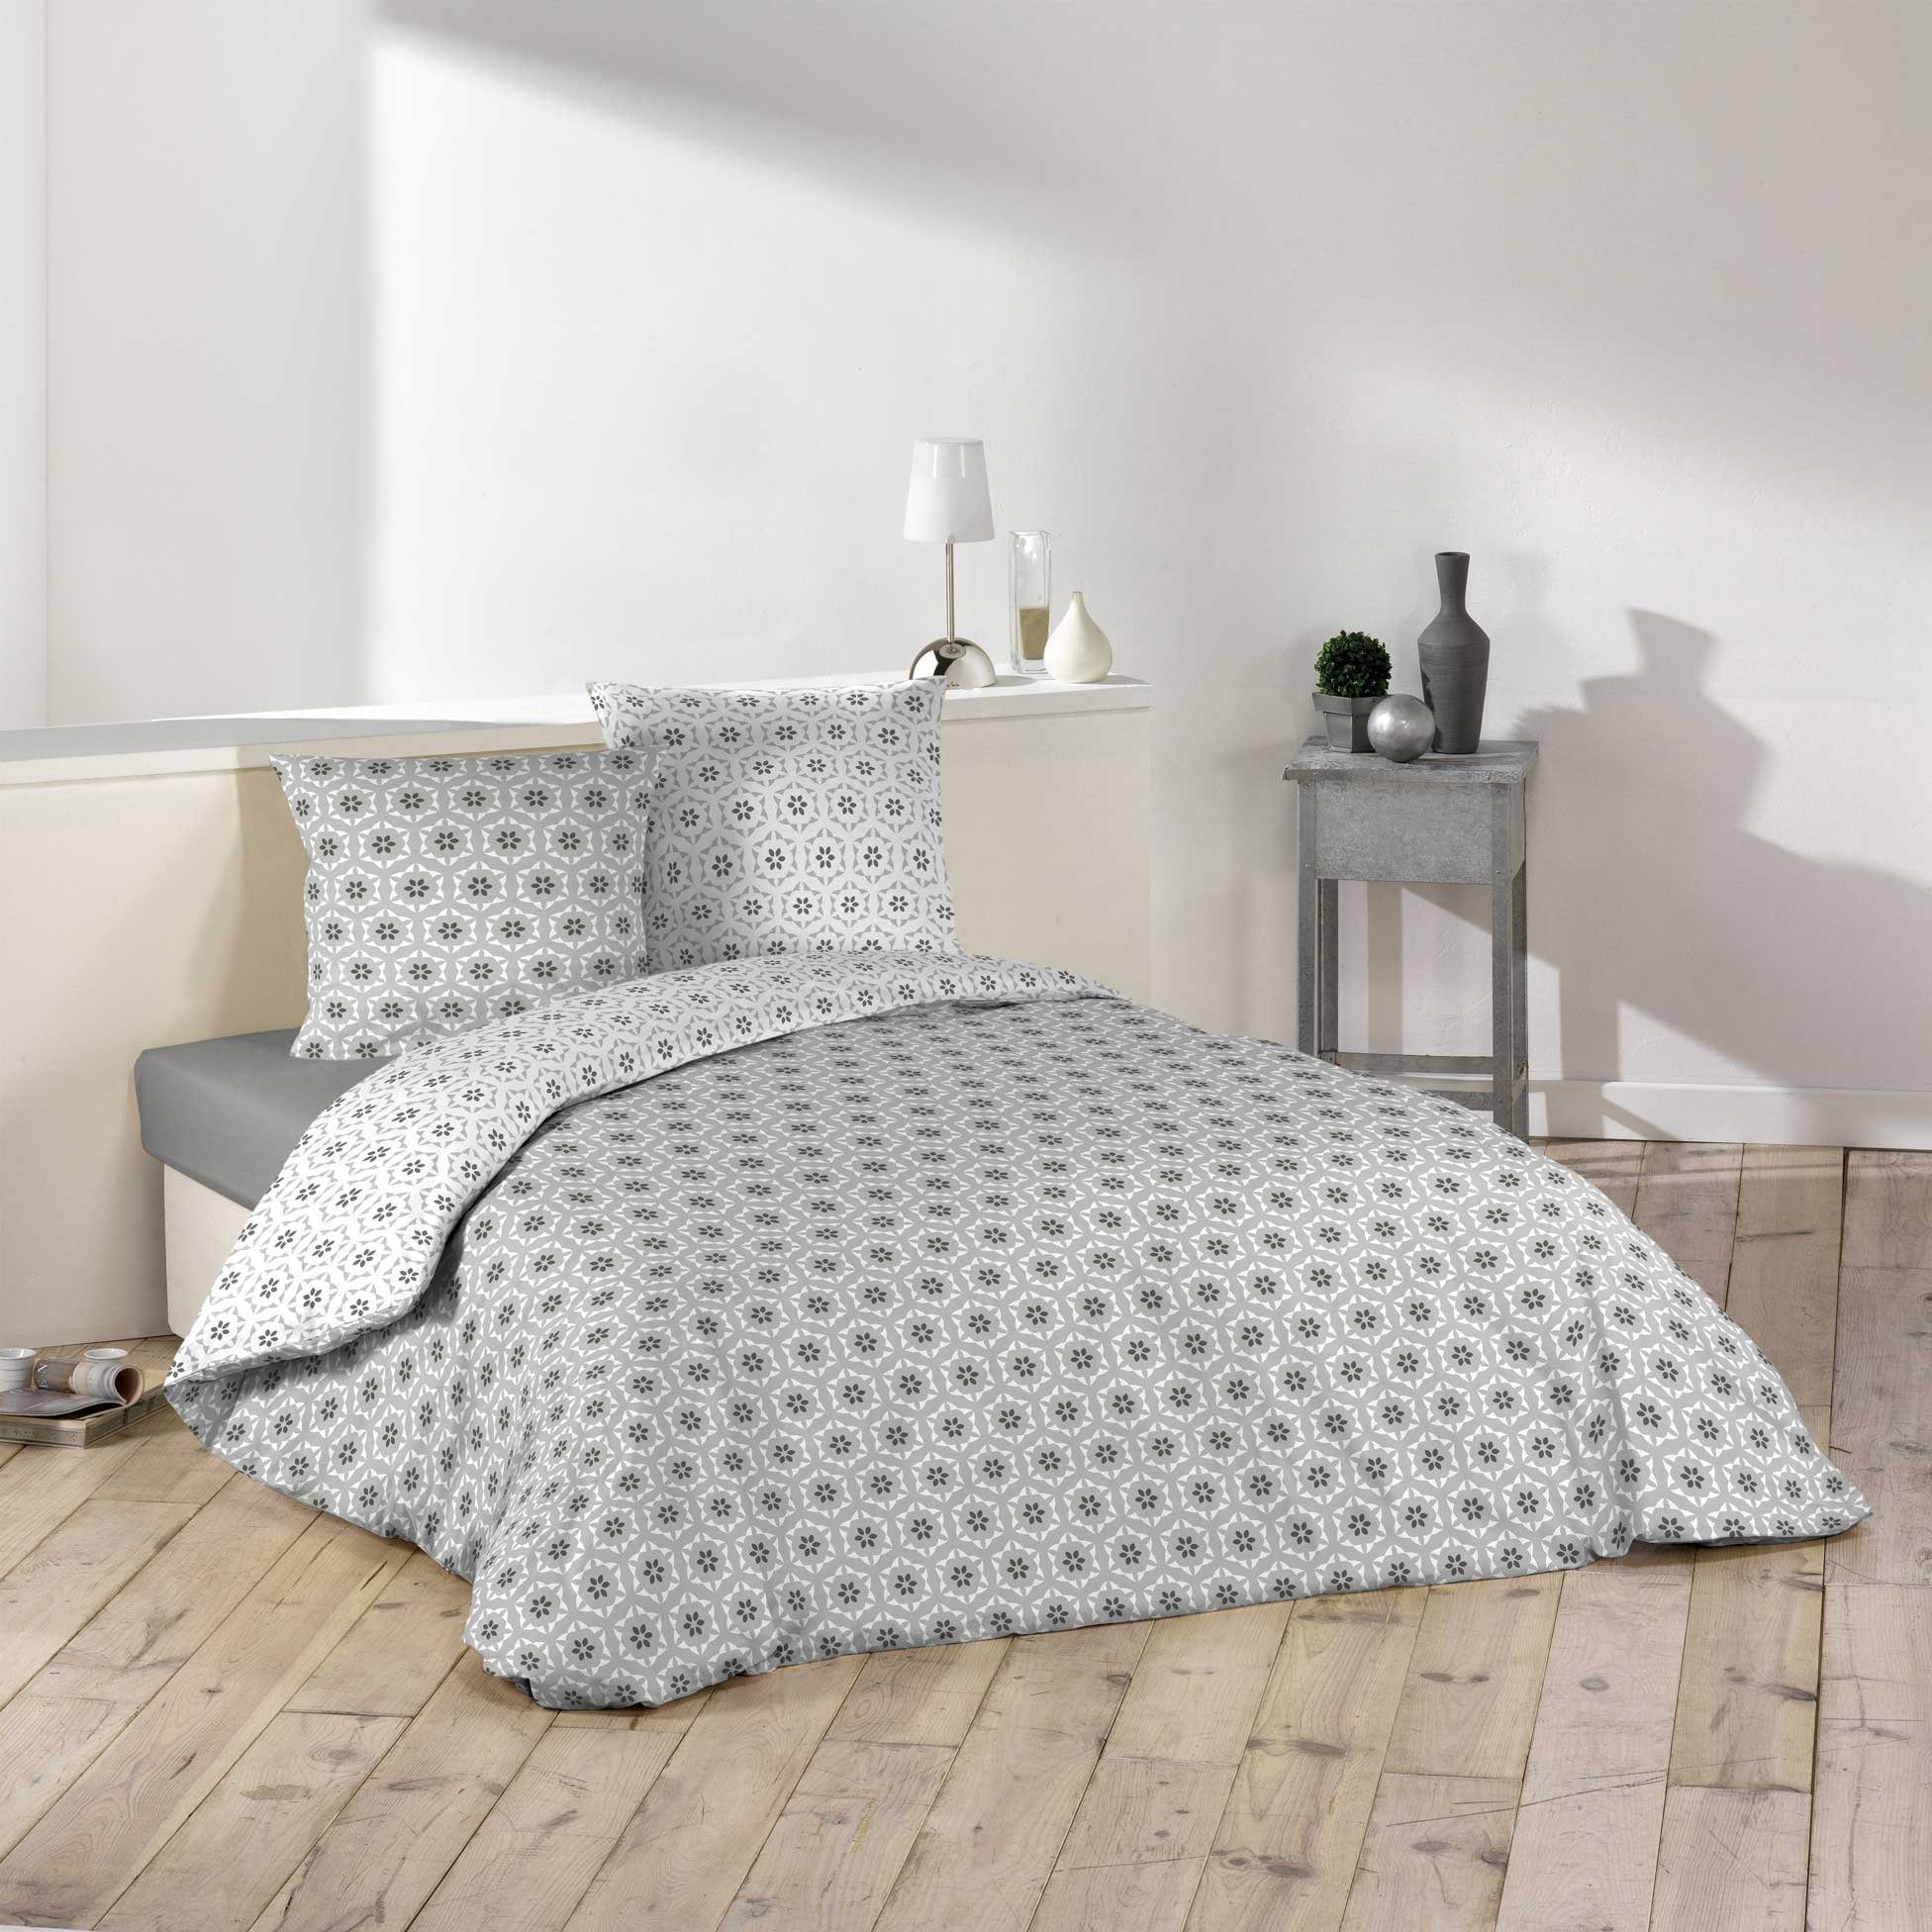 Bettwäsche, dynamic24, Polyester, 3 teilig, 3tlg Bettwäsche 240x220  Wendebettwäsche Kissen Bettbezug Bezug Set grau weiß